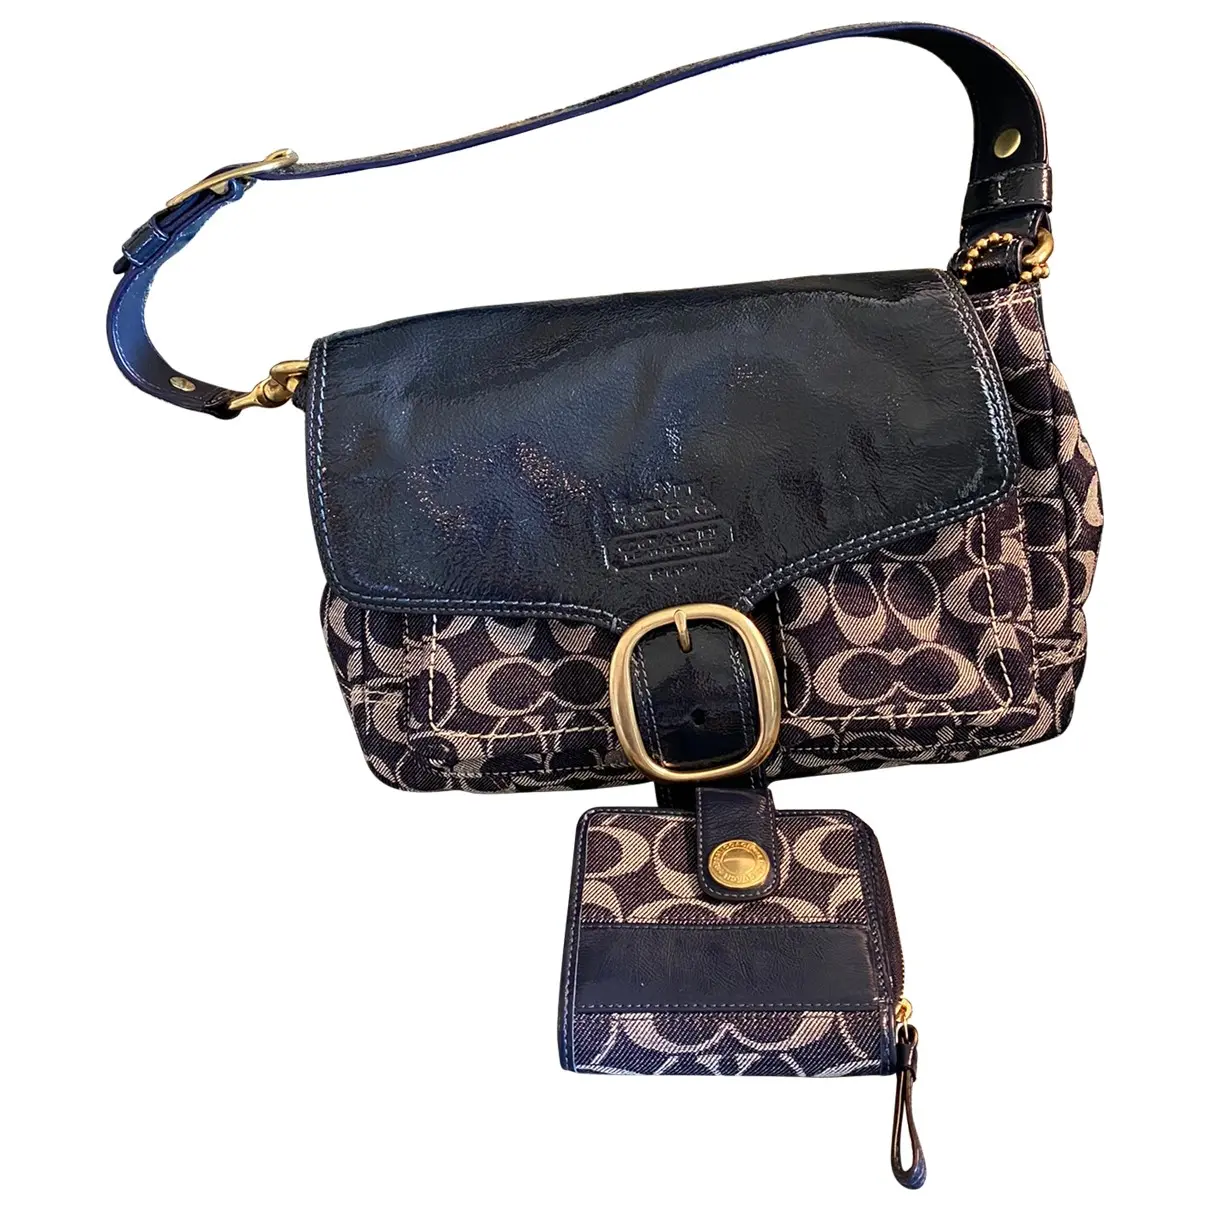 Signature Sufflette cloth handbag Coach